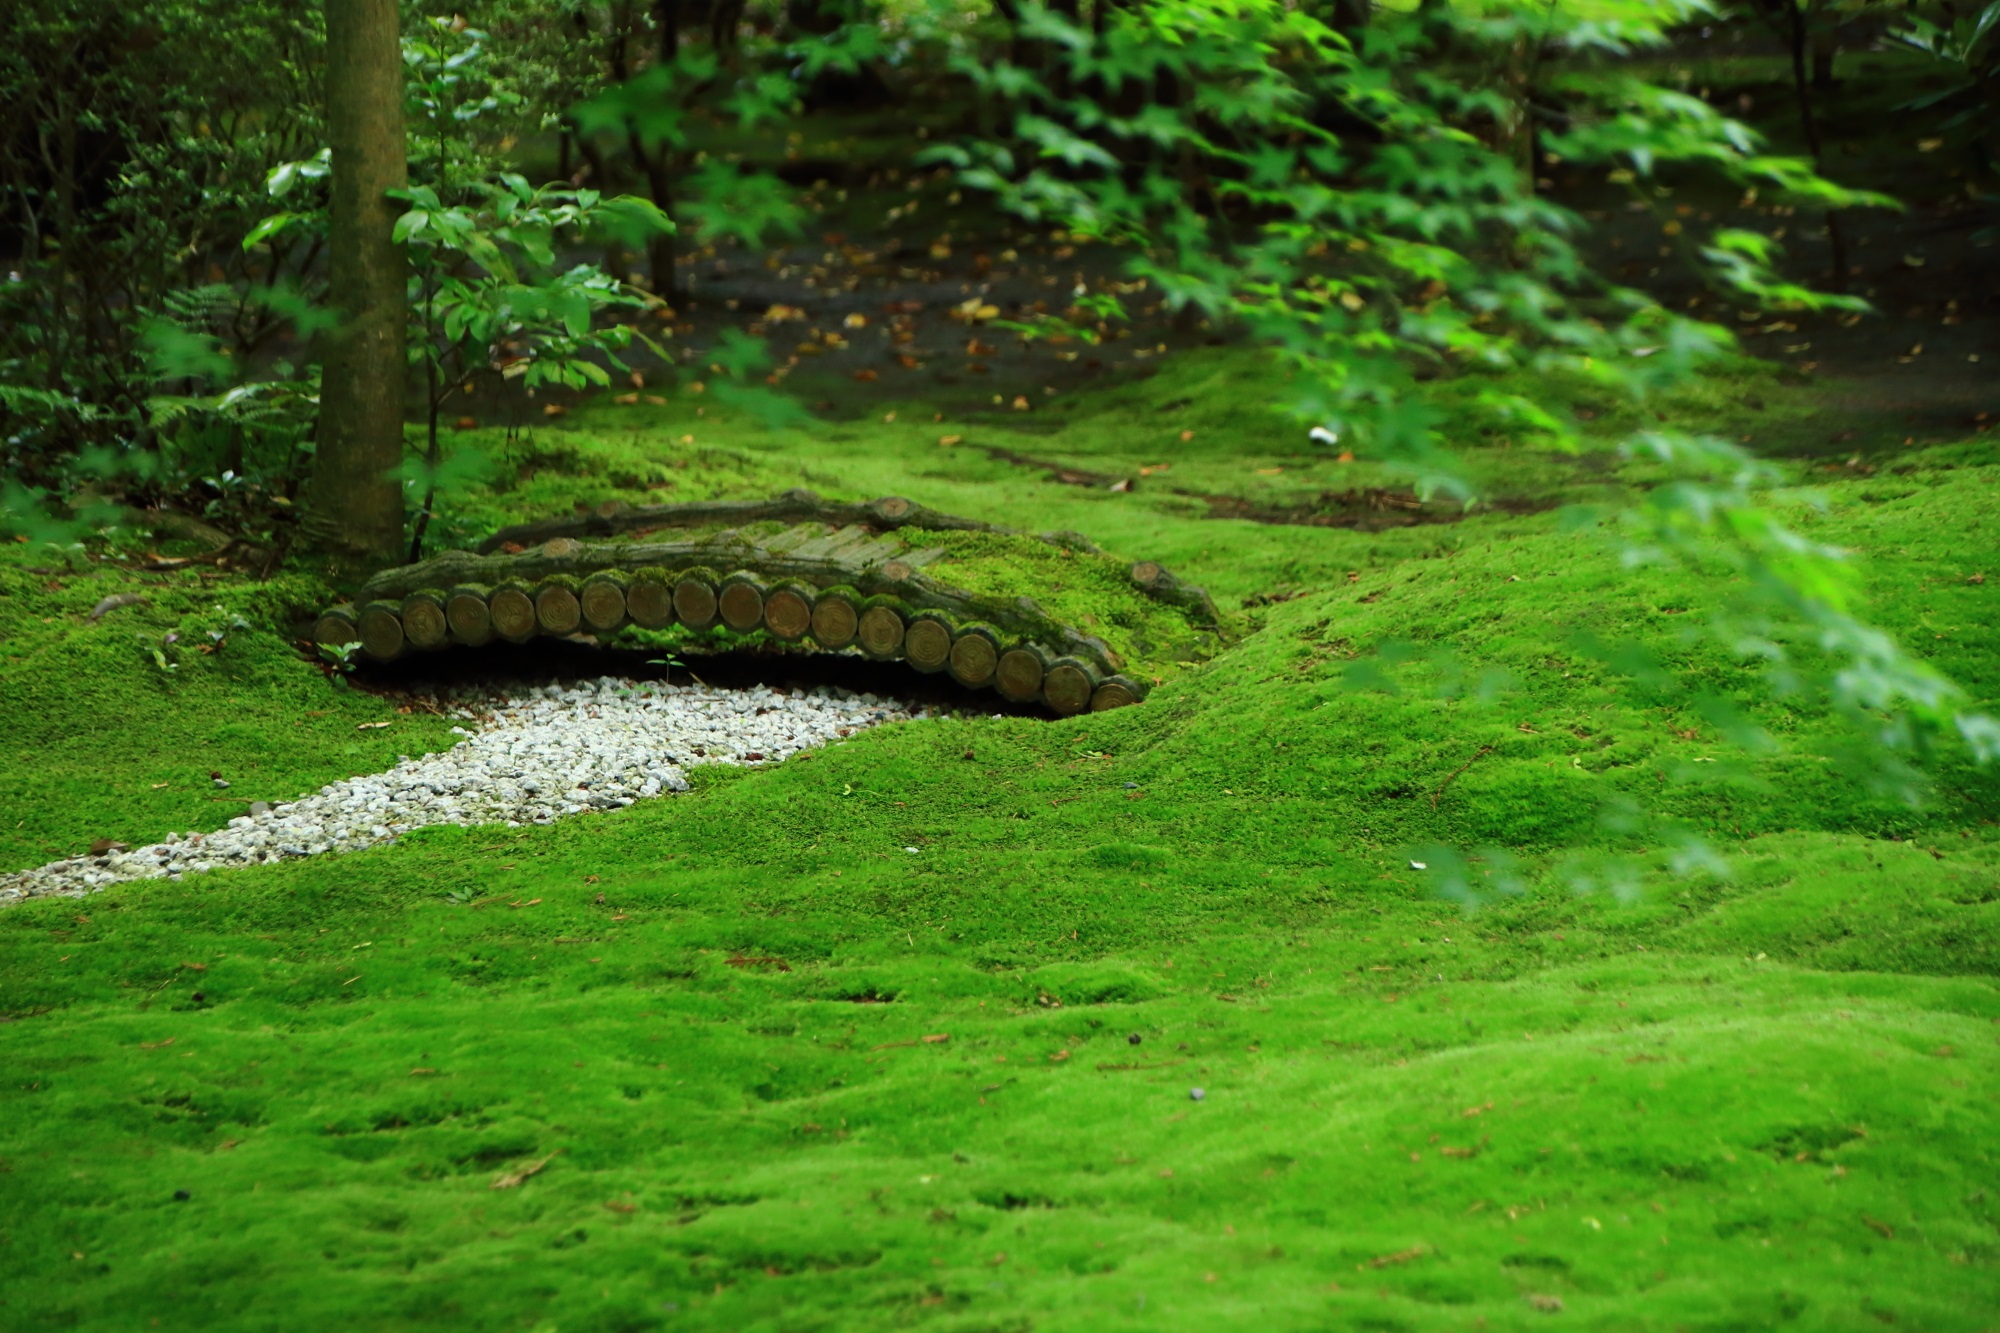 嵐山の野宮神社（ののみやじんじゃ）の苔庭